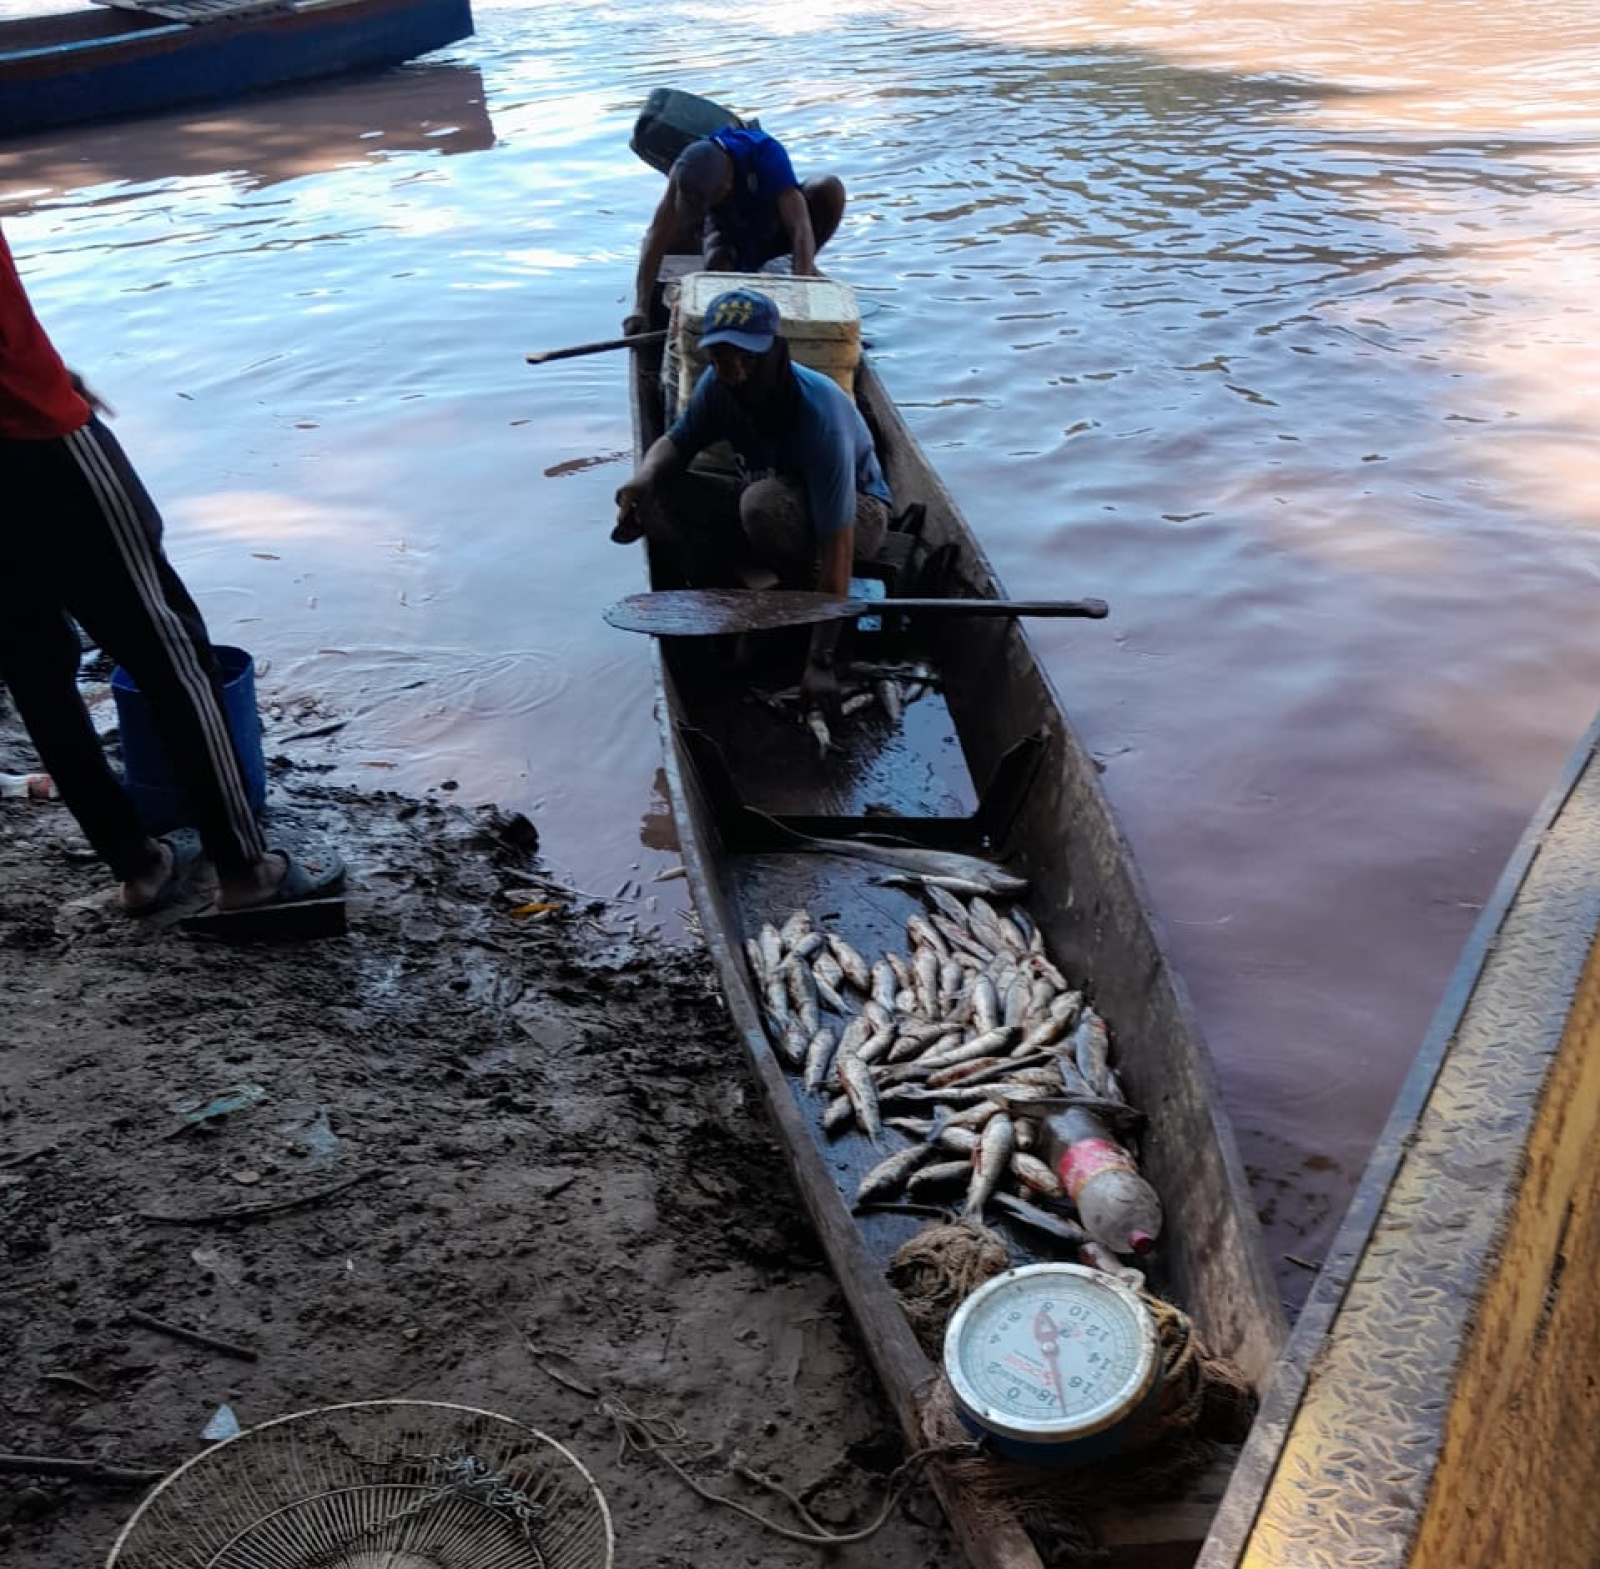 Un gran porcentaje de especie de pescado resultaron muertos tras contaminación en el río Cesar.

Foto: CORTESÍA